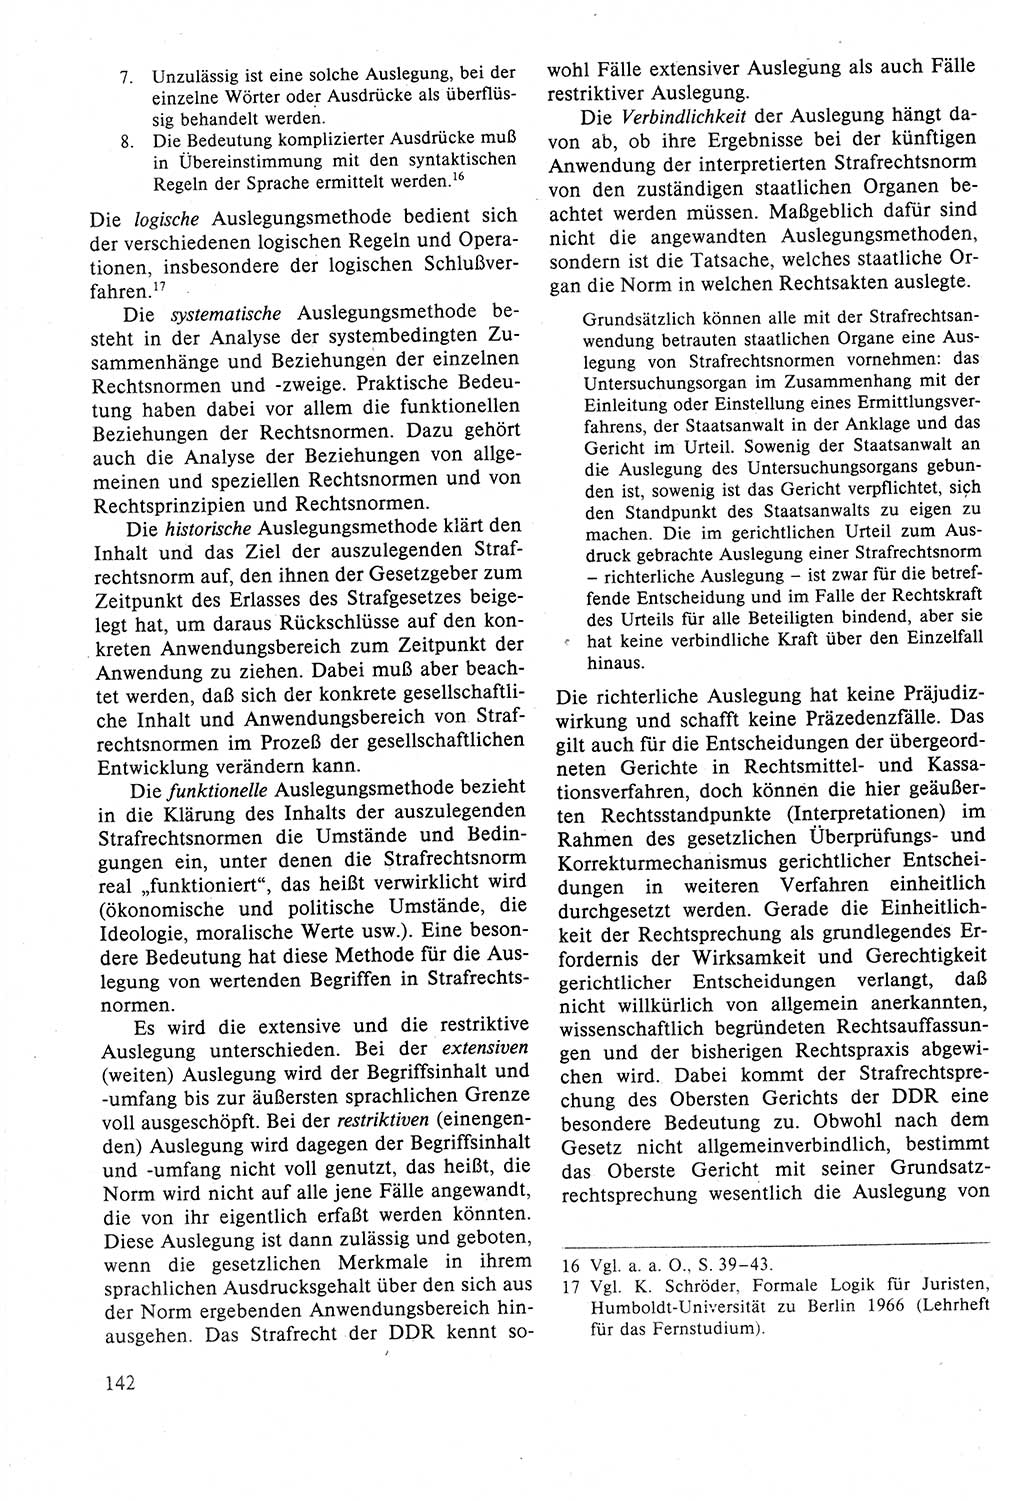 Strafrecht der DDR (Deutsche Demokratische Republik), Lehrbuch 1988, Seite 142 (Strafr. DDR Lb. 1988, S. 142)